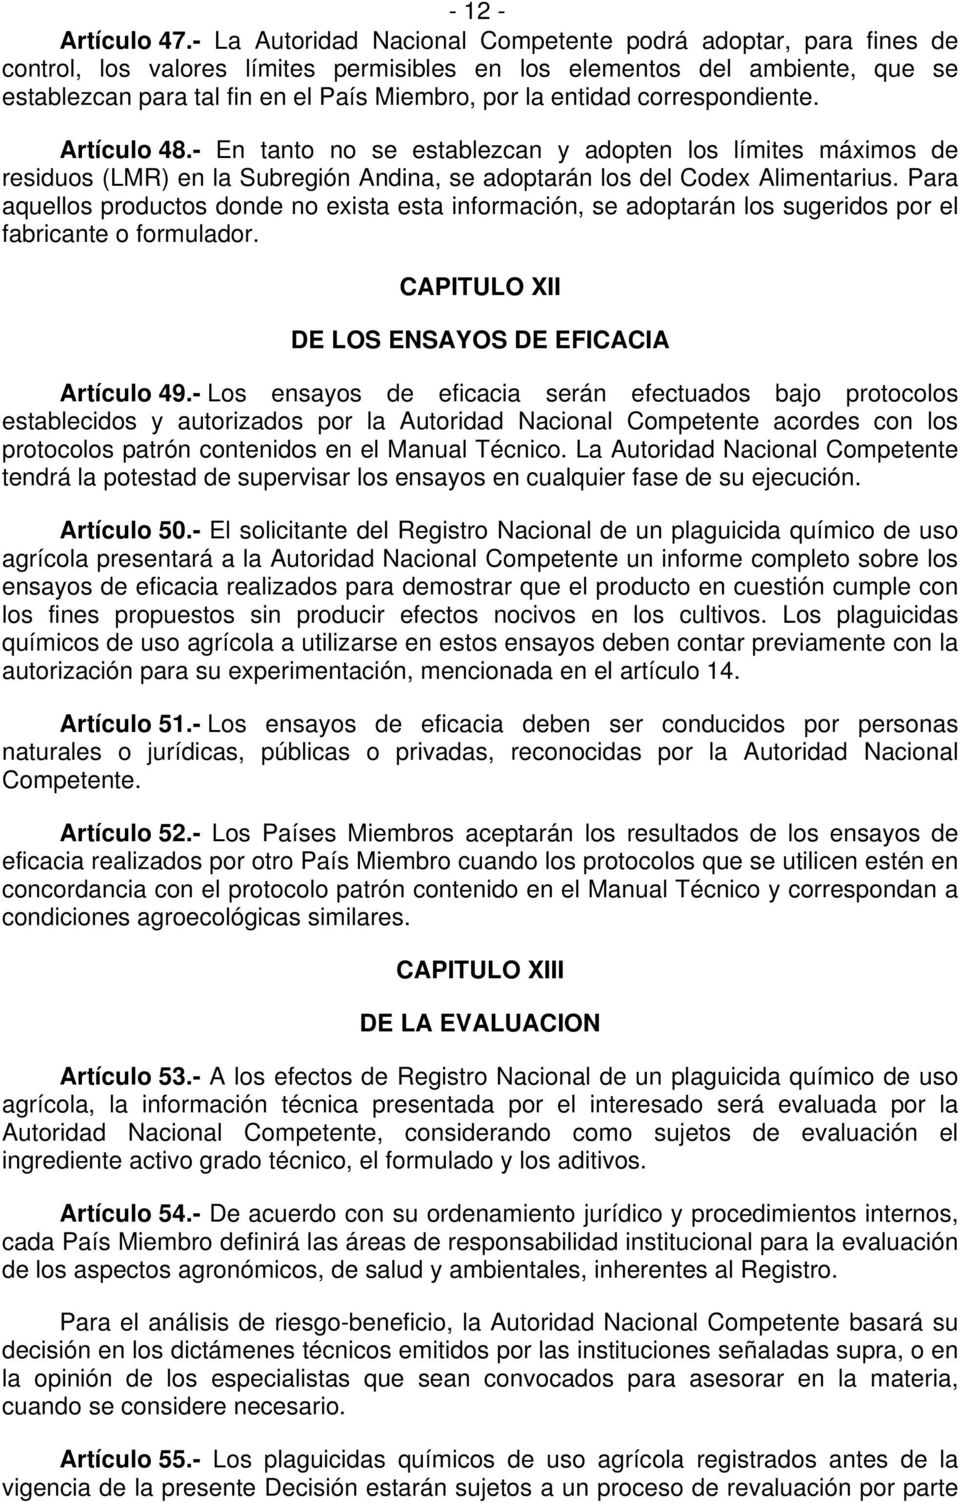 entidad correspondiente. Artículo 48.- En tanto no se establezcan y adopten los límites máximos de residuos (LMR) en la Subregión Andina, se adoptarán los del Codex Alimentarius.